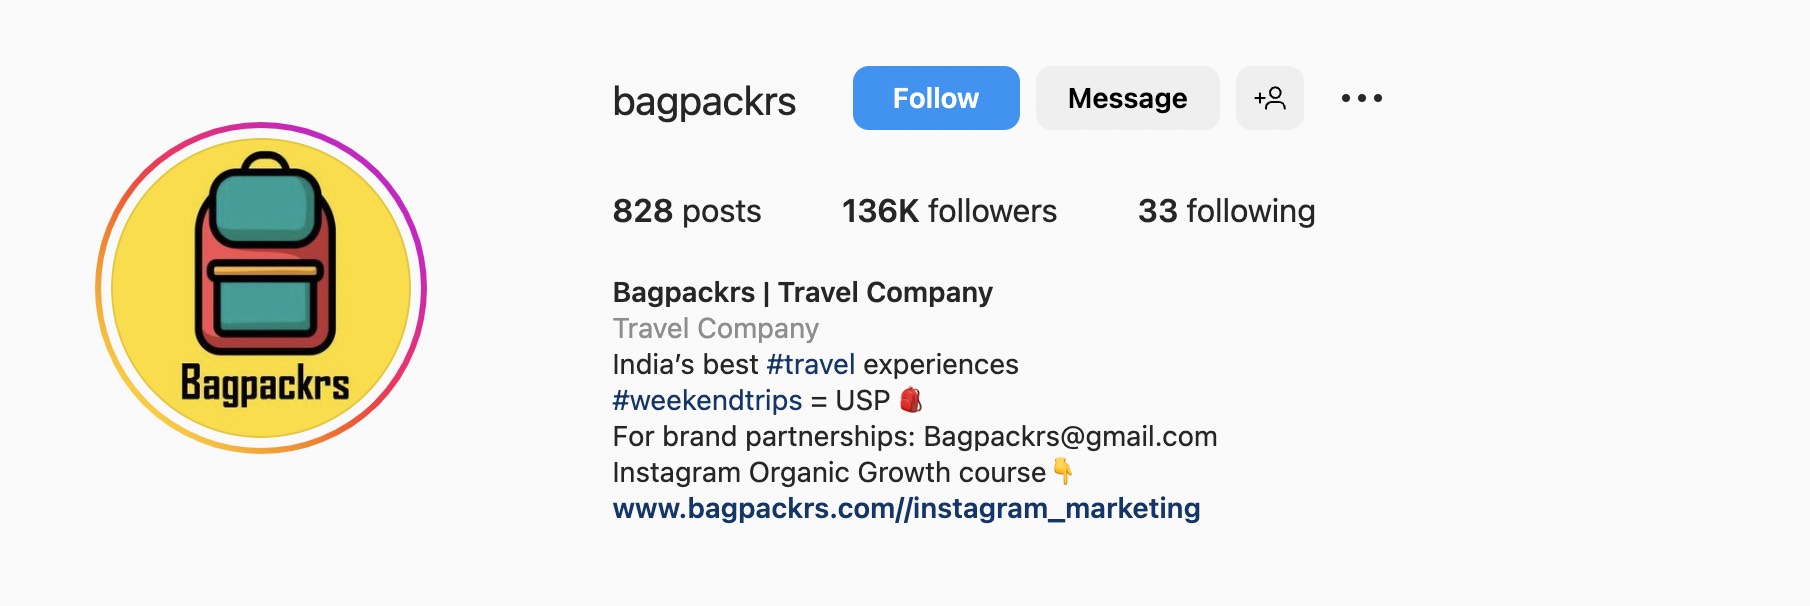 旅行、bagpackrsのための良いInstagramのバイオのアイデア